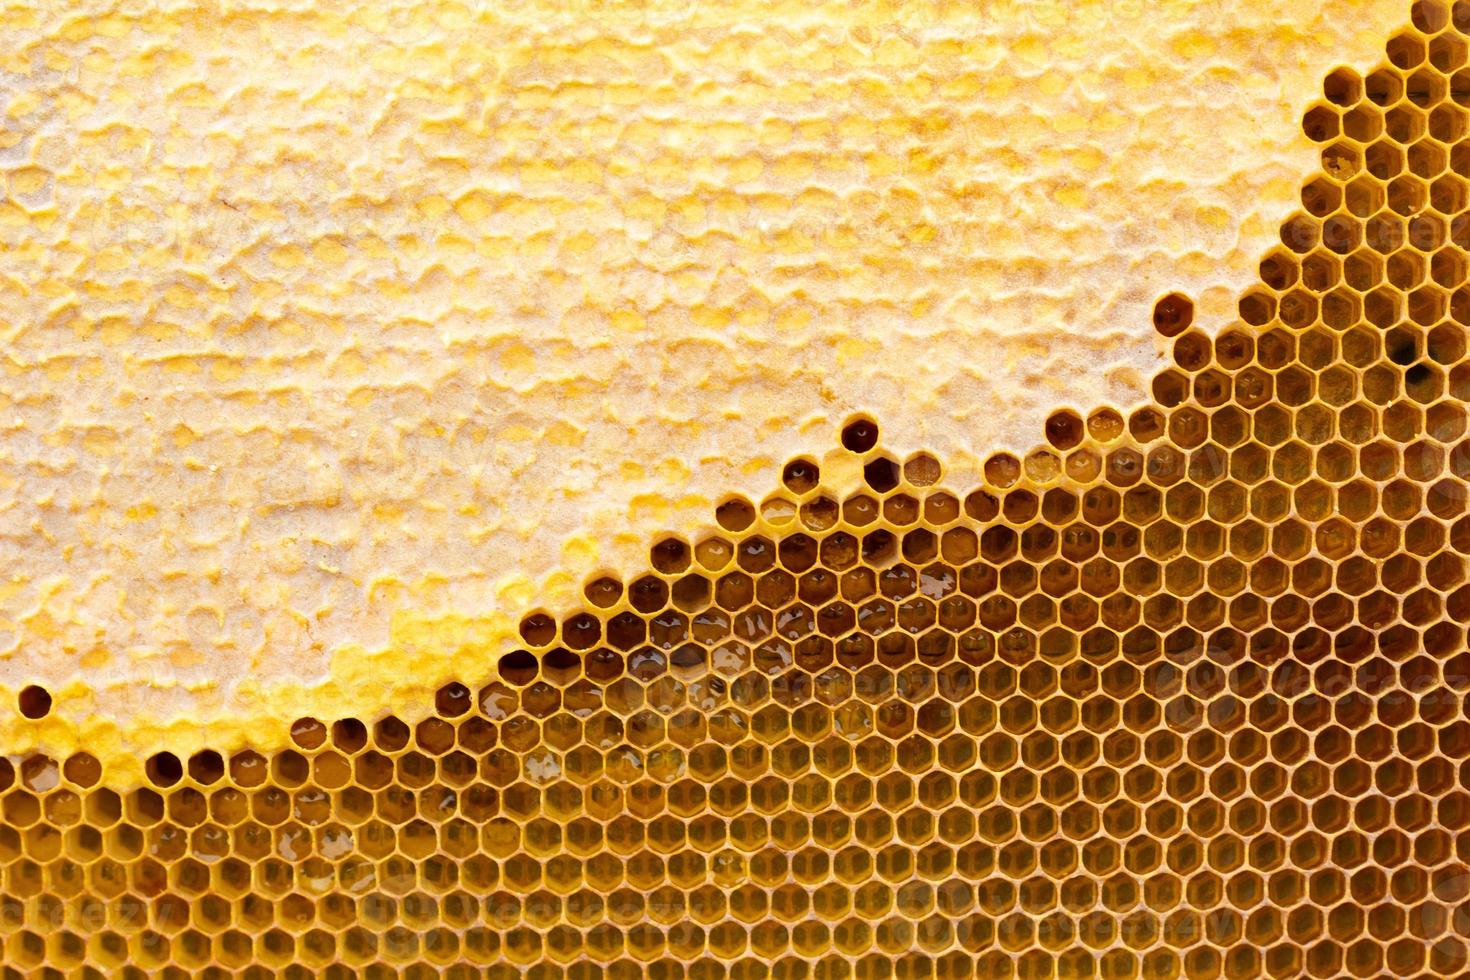 panal con textura de miel. . textura de fondo y dibujo de una sección de panal de cera de foto